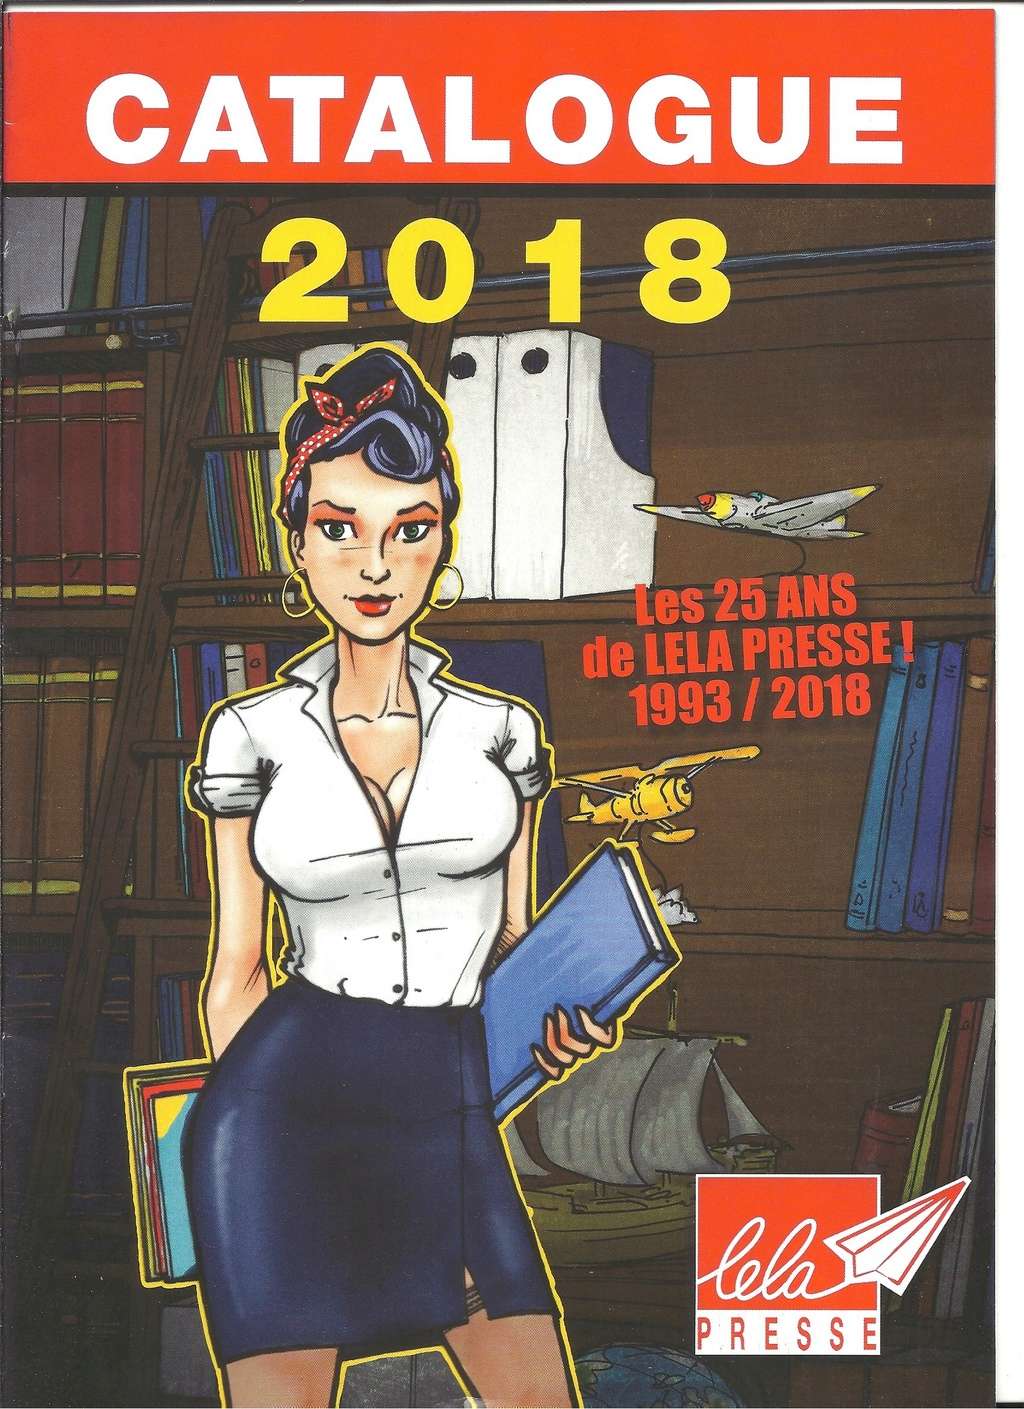 [LELA PRESSE 2018] Catalogue librairie 2018 Lela_p13